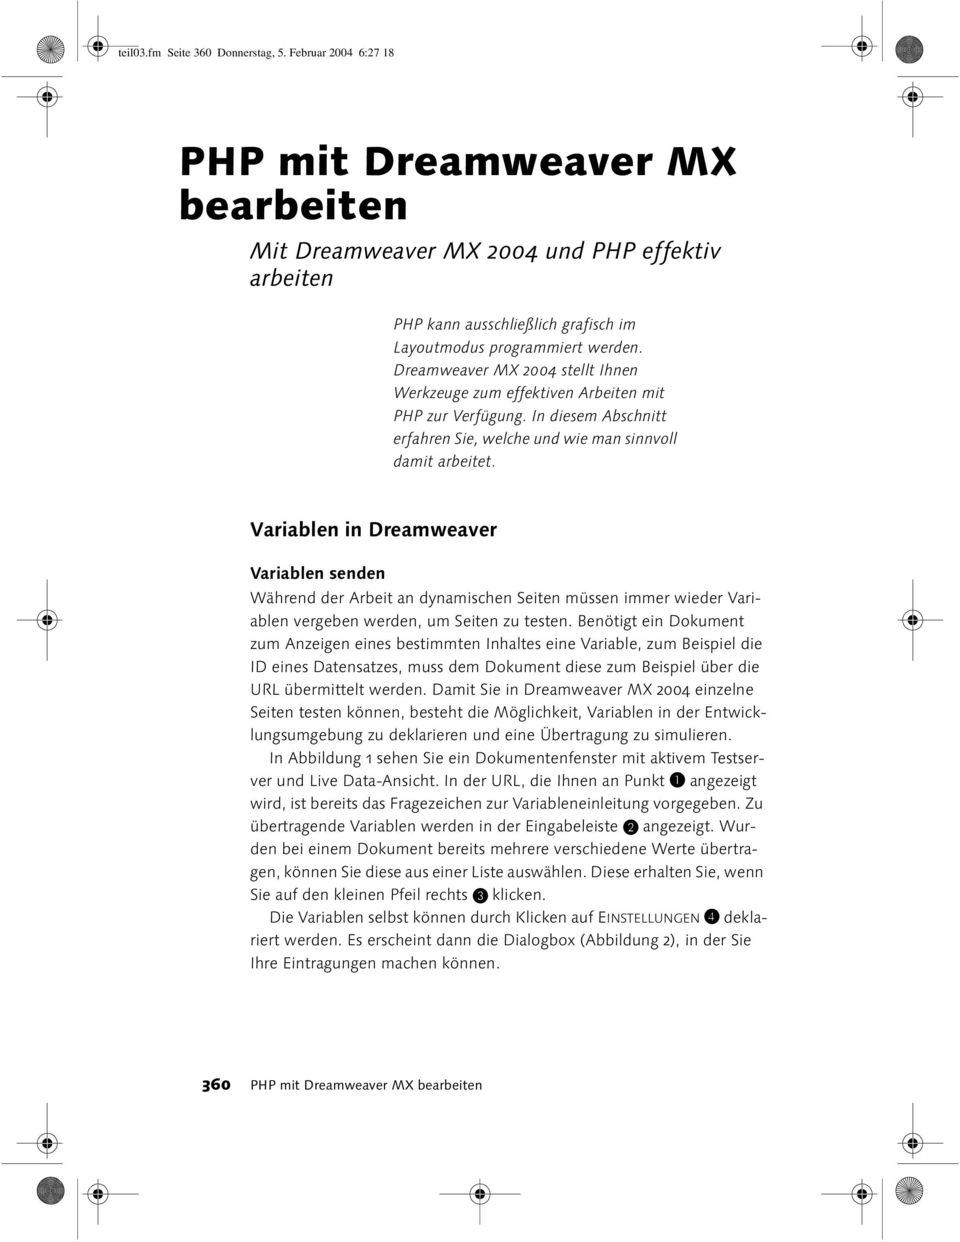 Dreamweaver MX 2004 stellt Ihnen Werkzeuge zum effektiven Arbeiten mit PHP zur Verfügung. In diesem Abschnitt erfahren Sie, welche und wie man sinnvoll damit arbeitet.